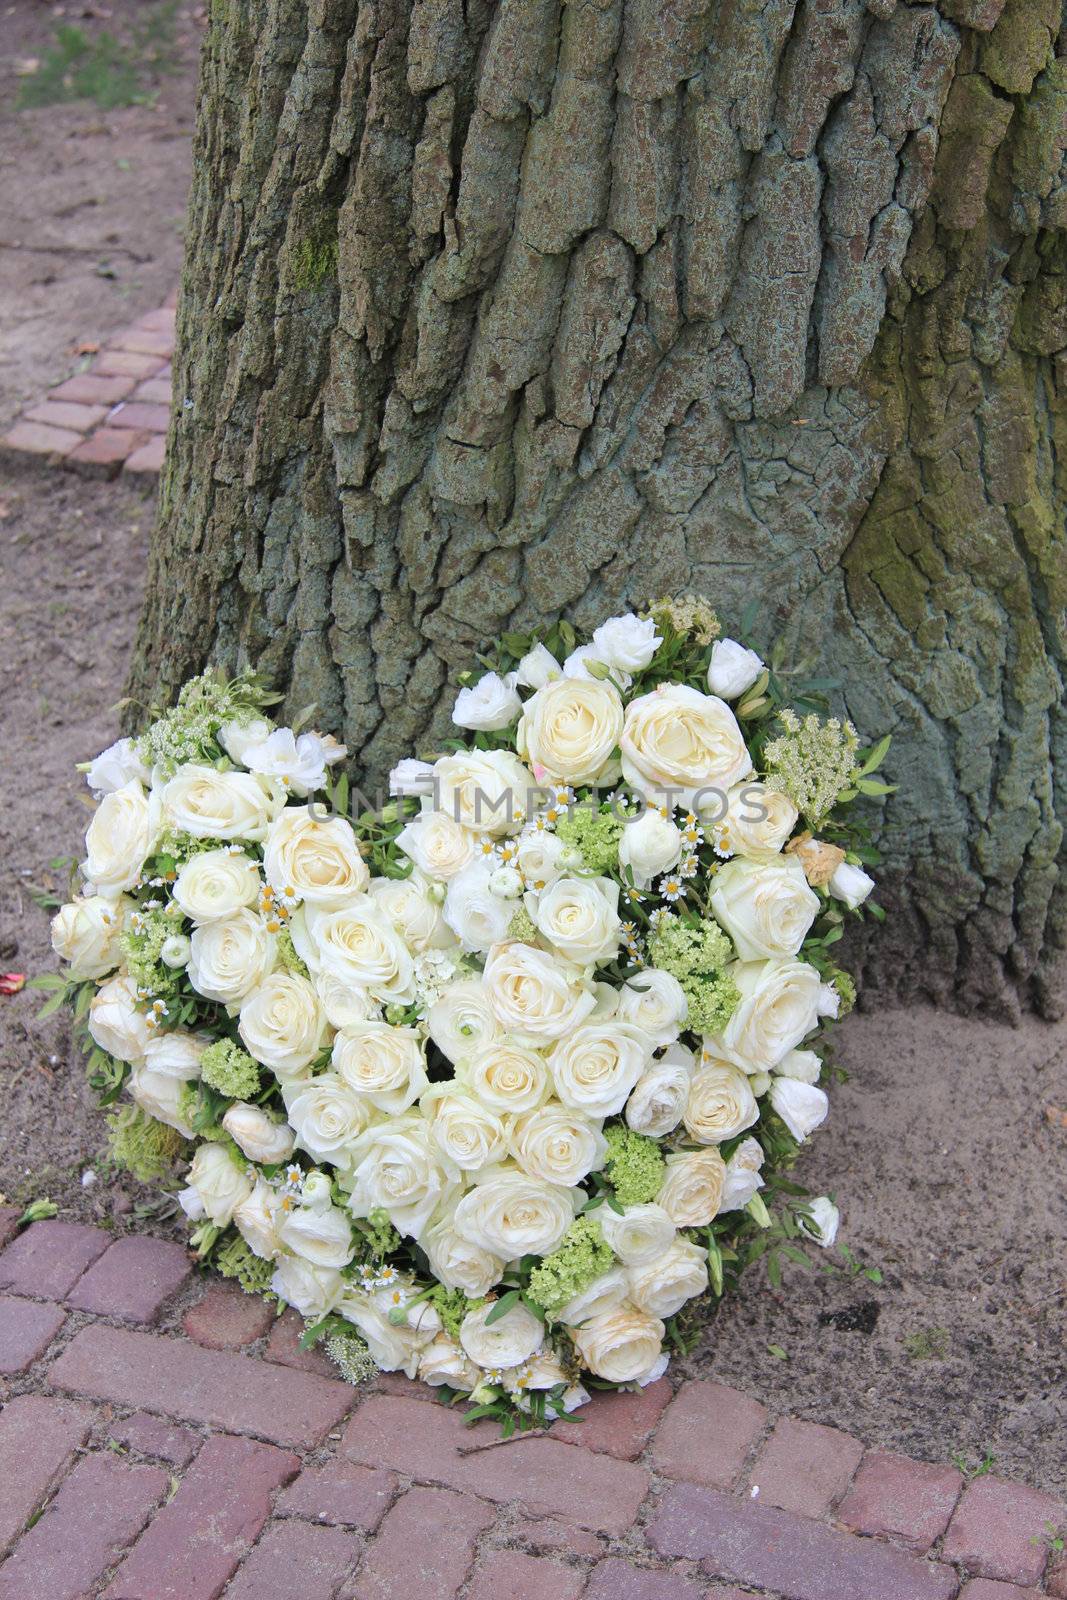 A sympathy flower arrangement near a tree in the shape on an heart